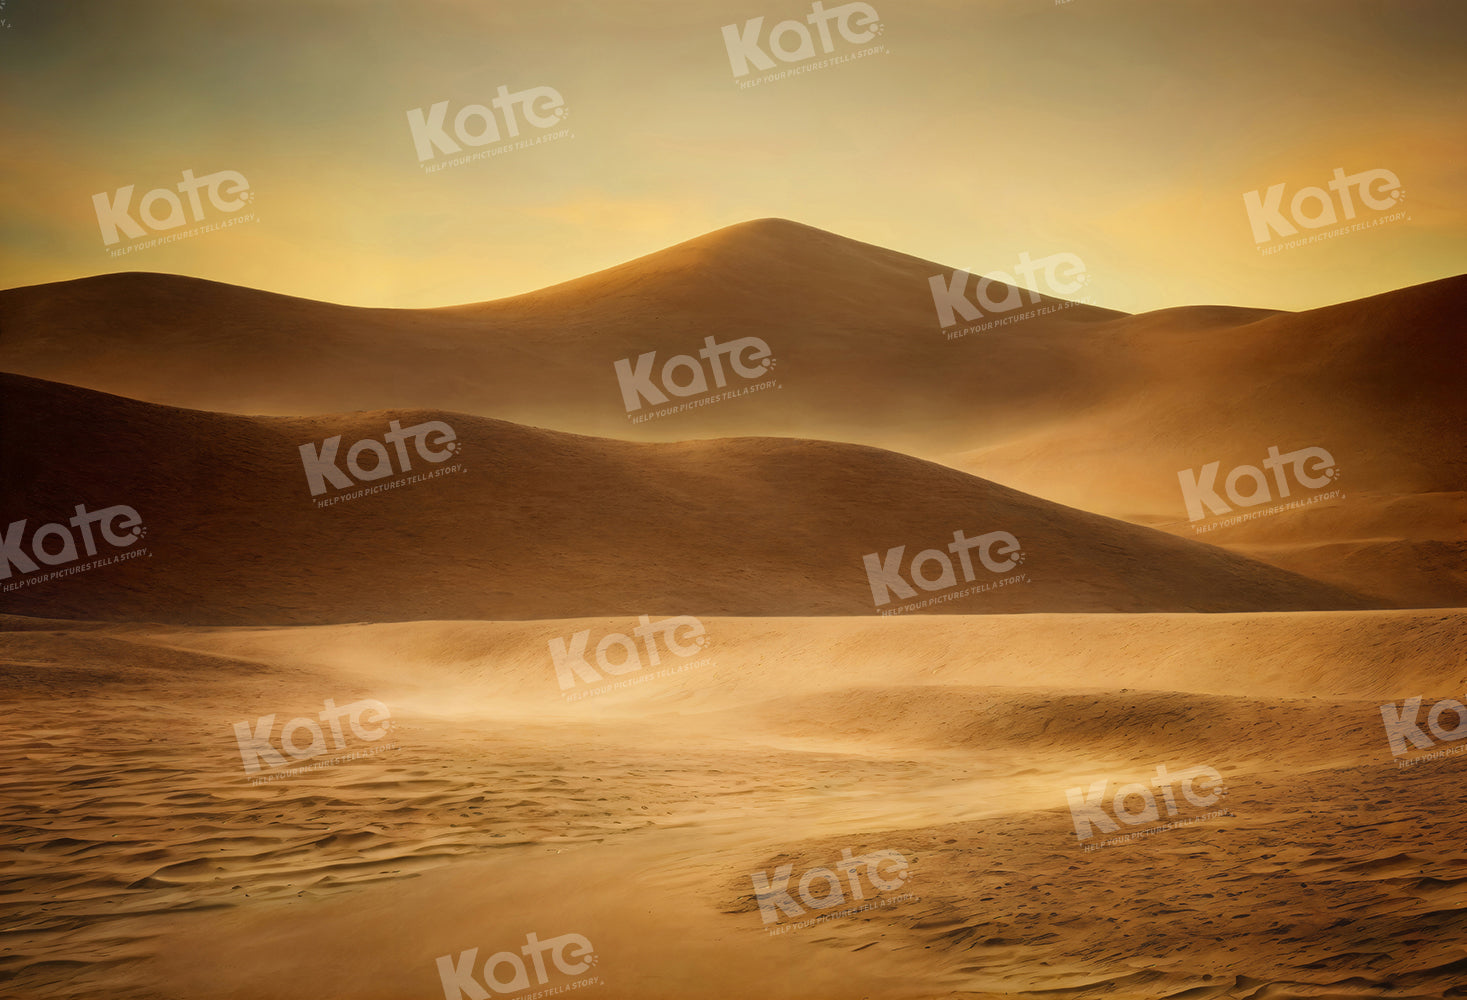 Kate Dune Désert de sable Toile de fond pour la photographie